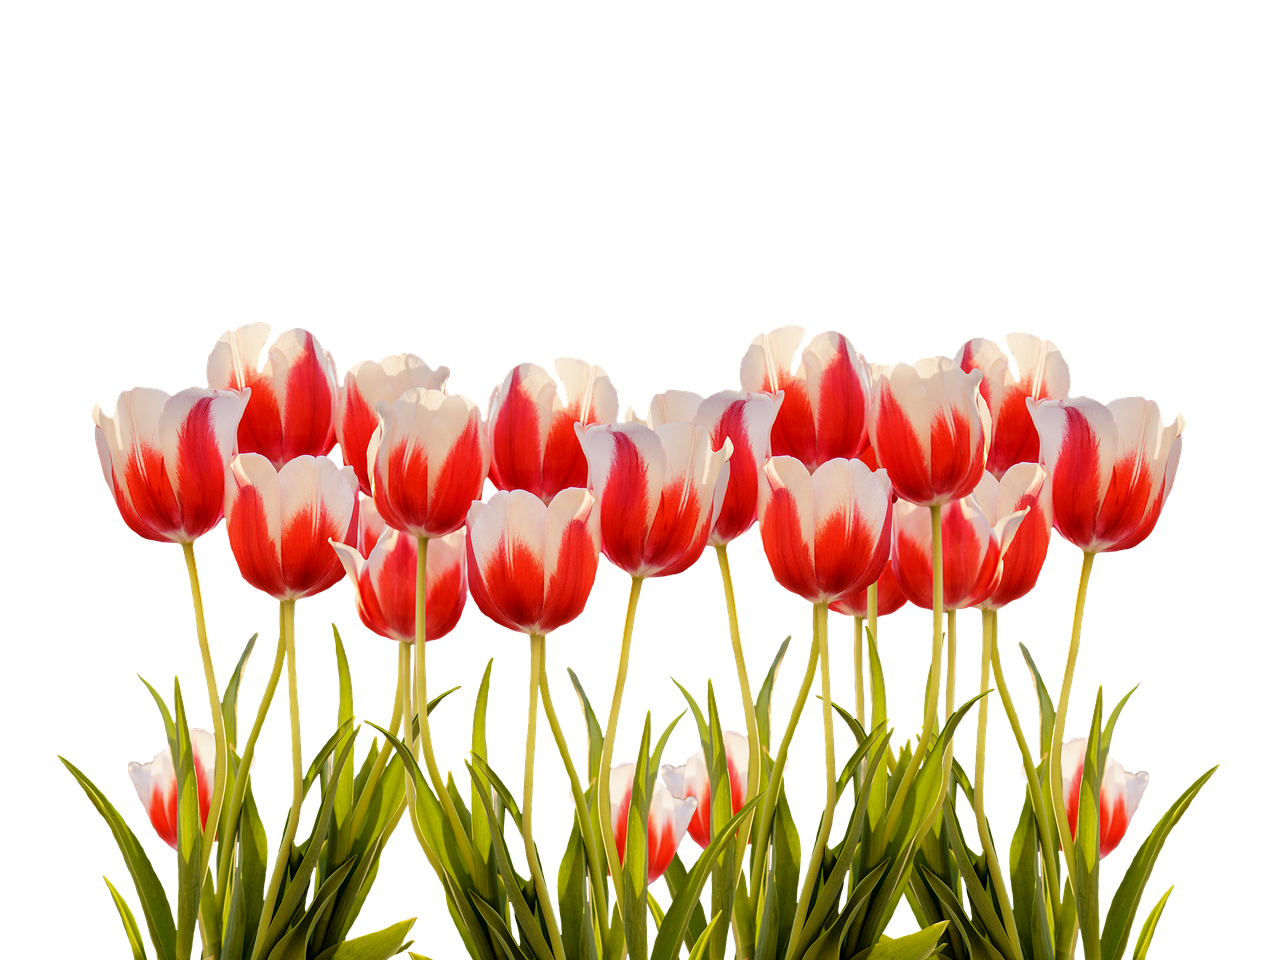 Vibrant Red White Tulips Black Background.jpg